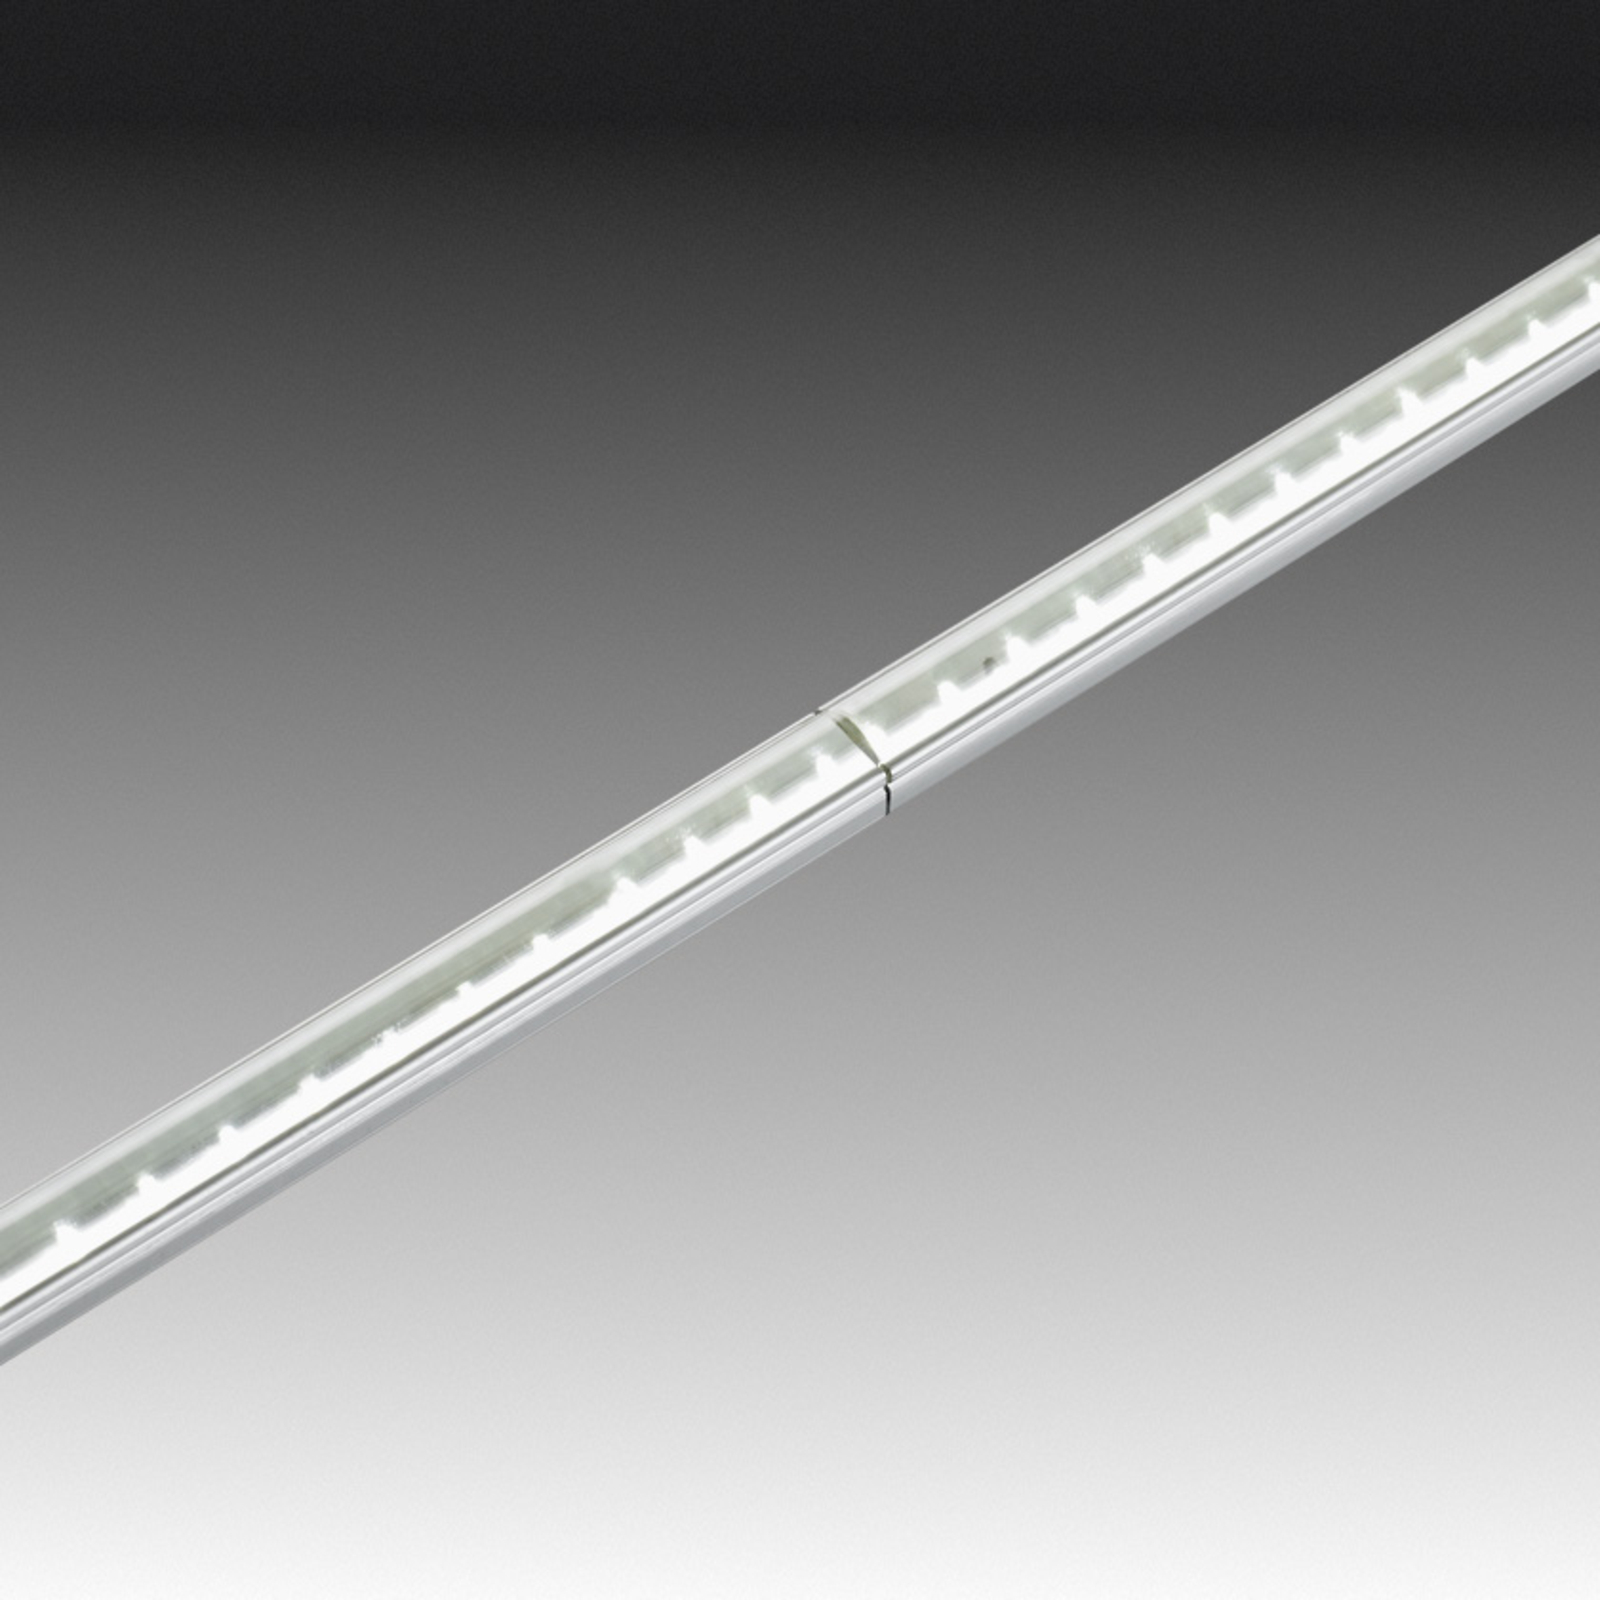 Tige LED Stick 2 pour meuble, 20 cm, blanc chaud